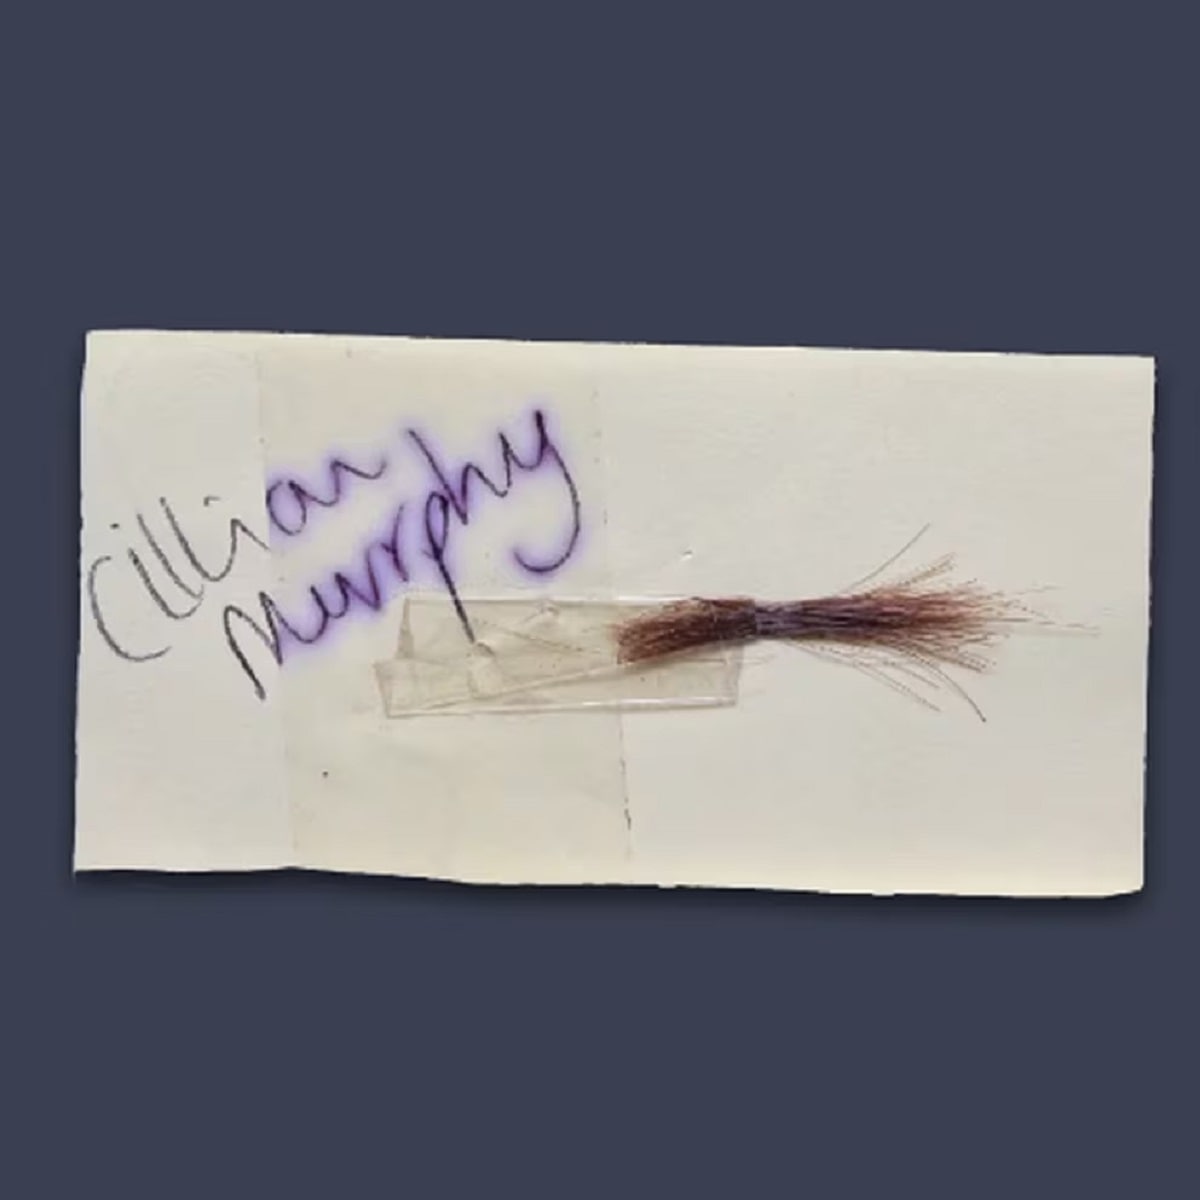 Mechón de pelo de Cillian Murphy